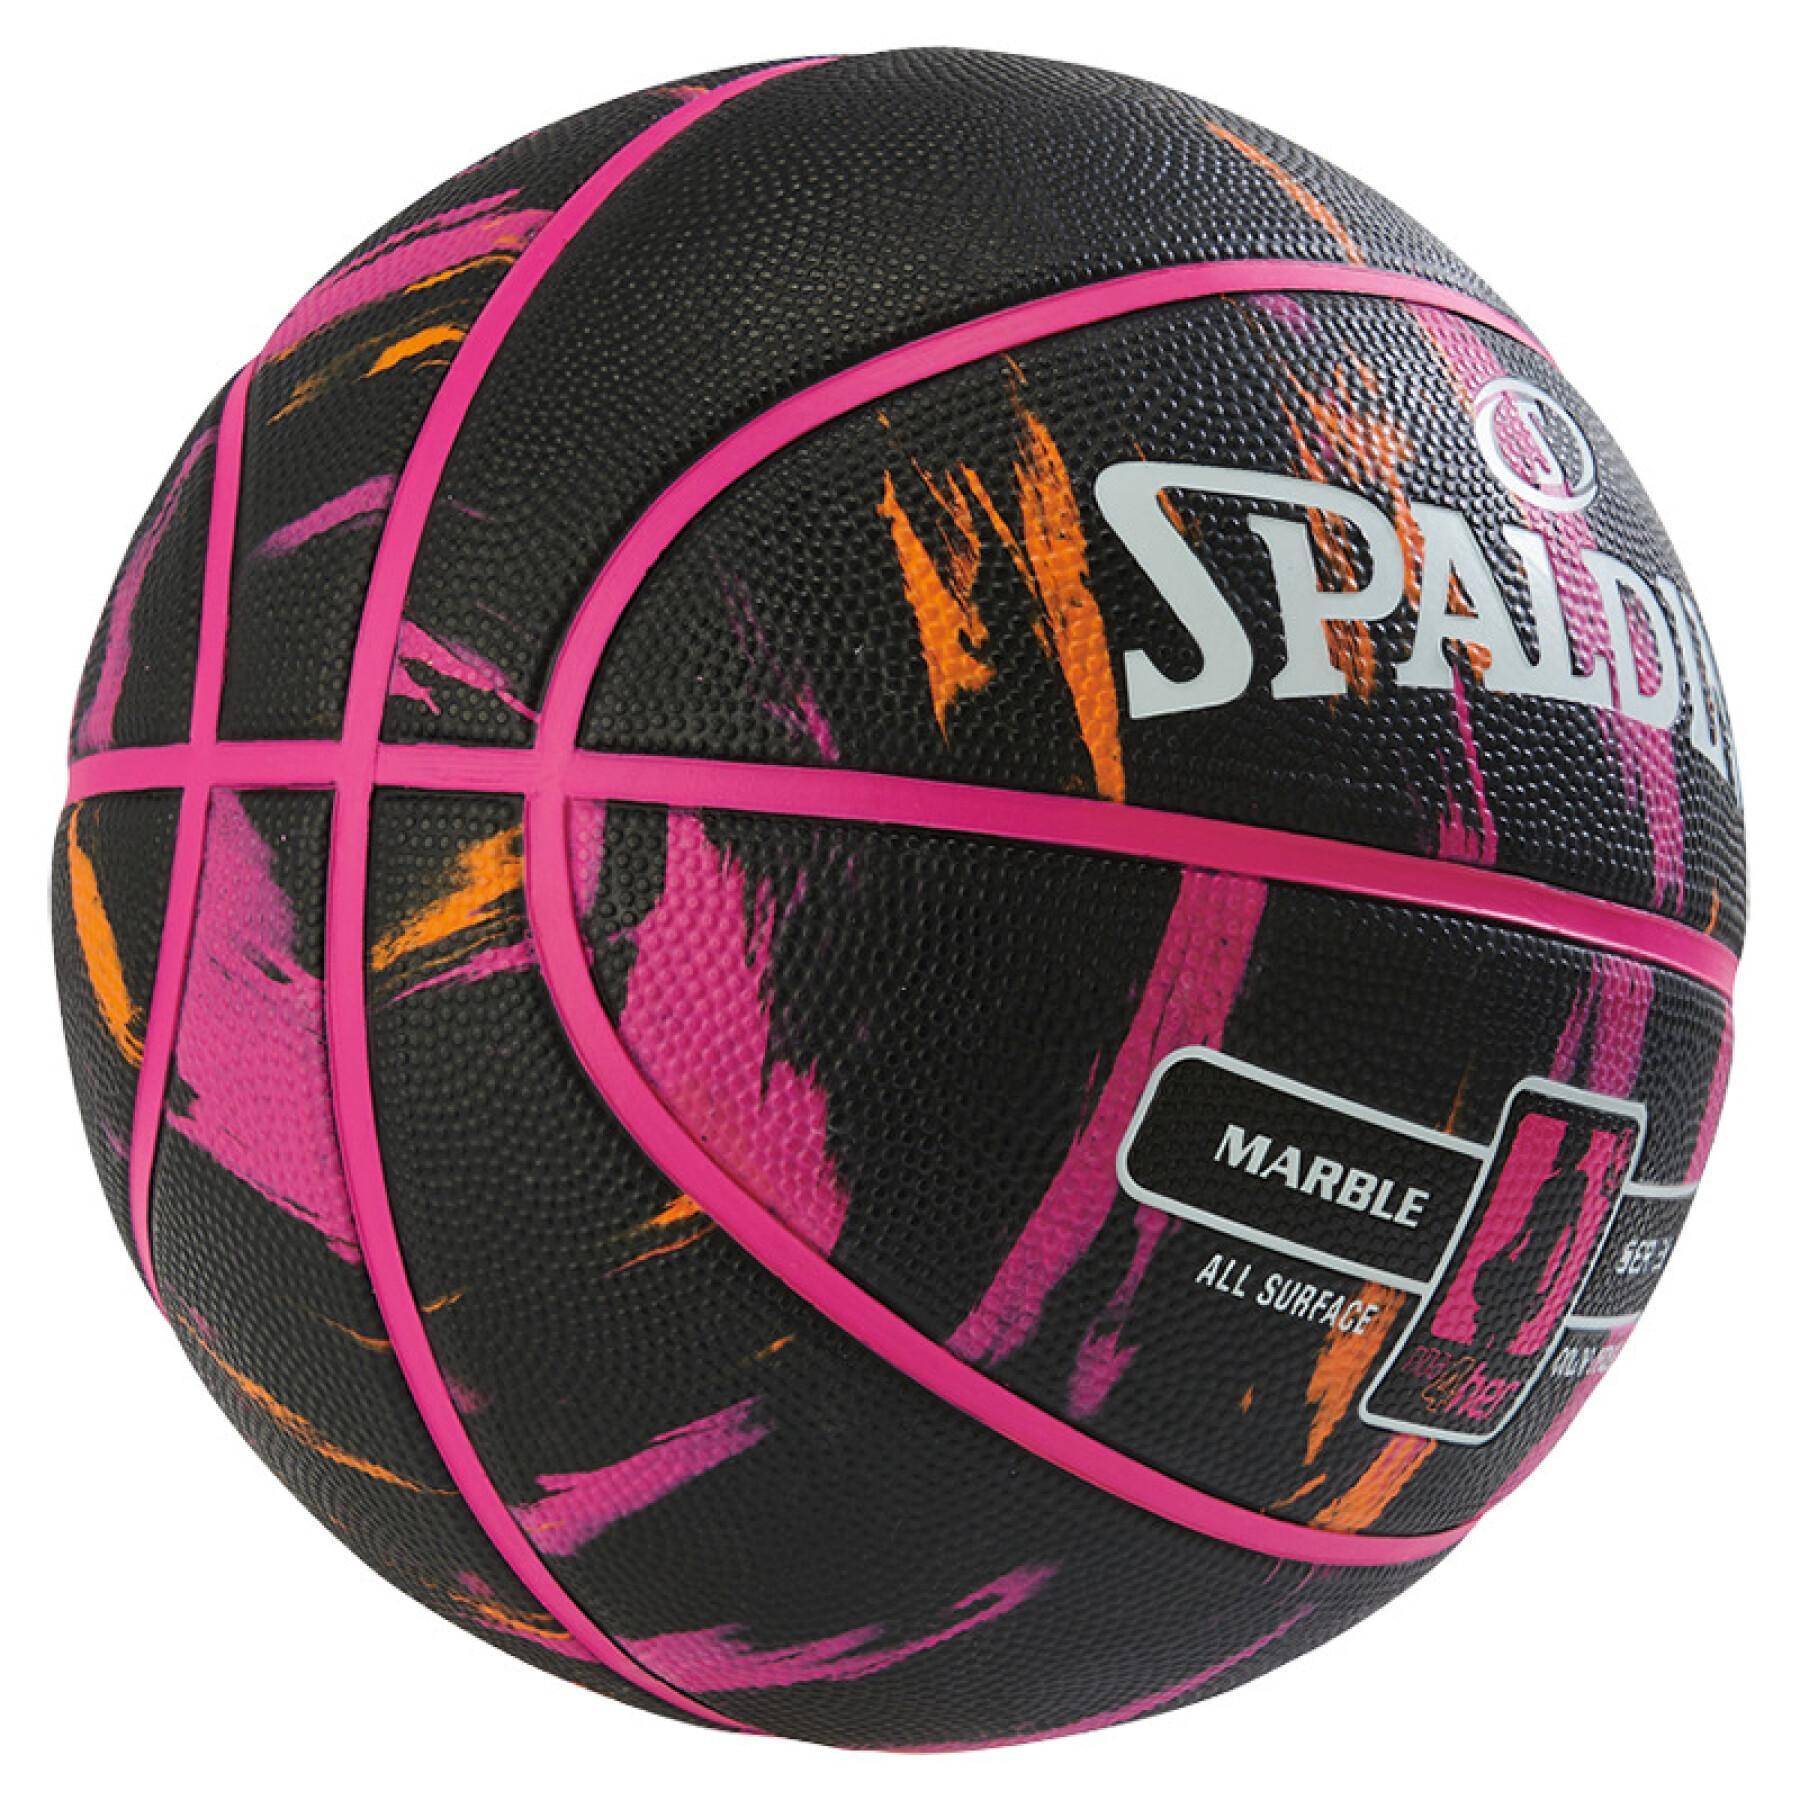 Ballon Spalding NBA Marble (83-875z)